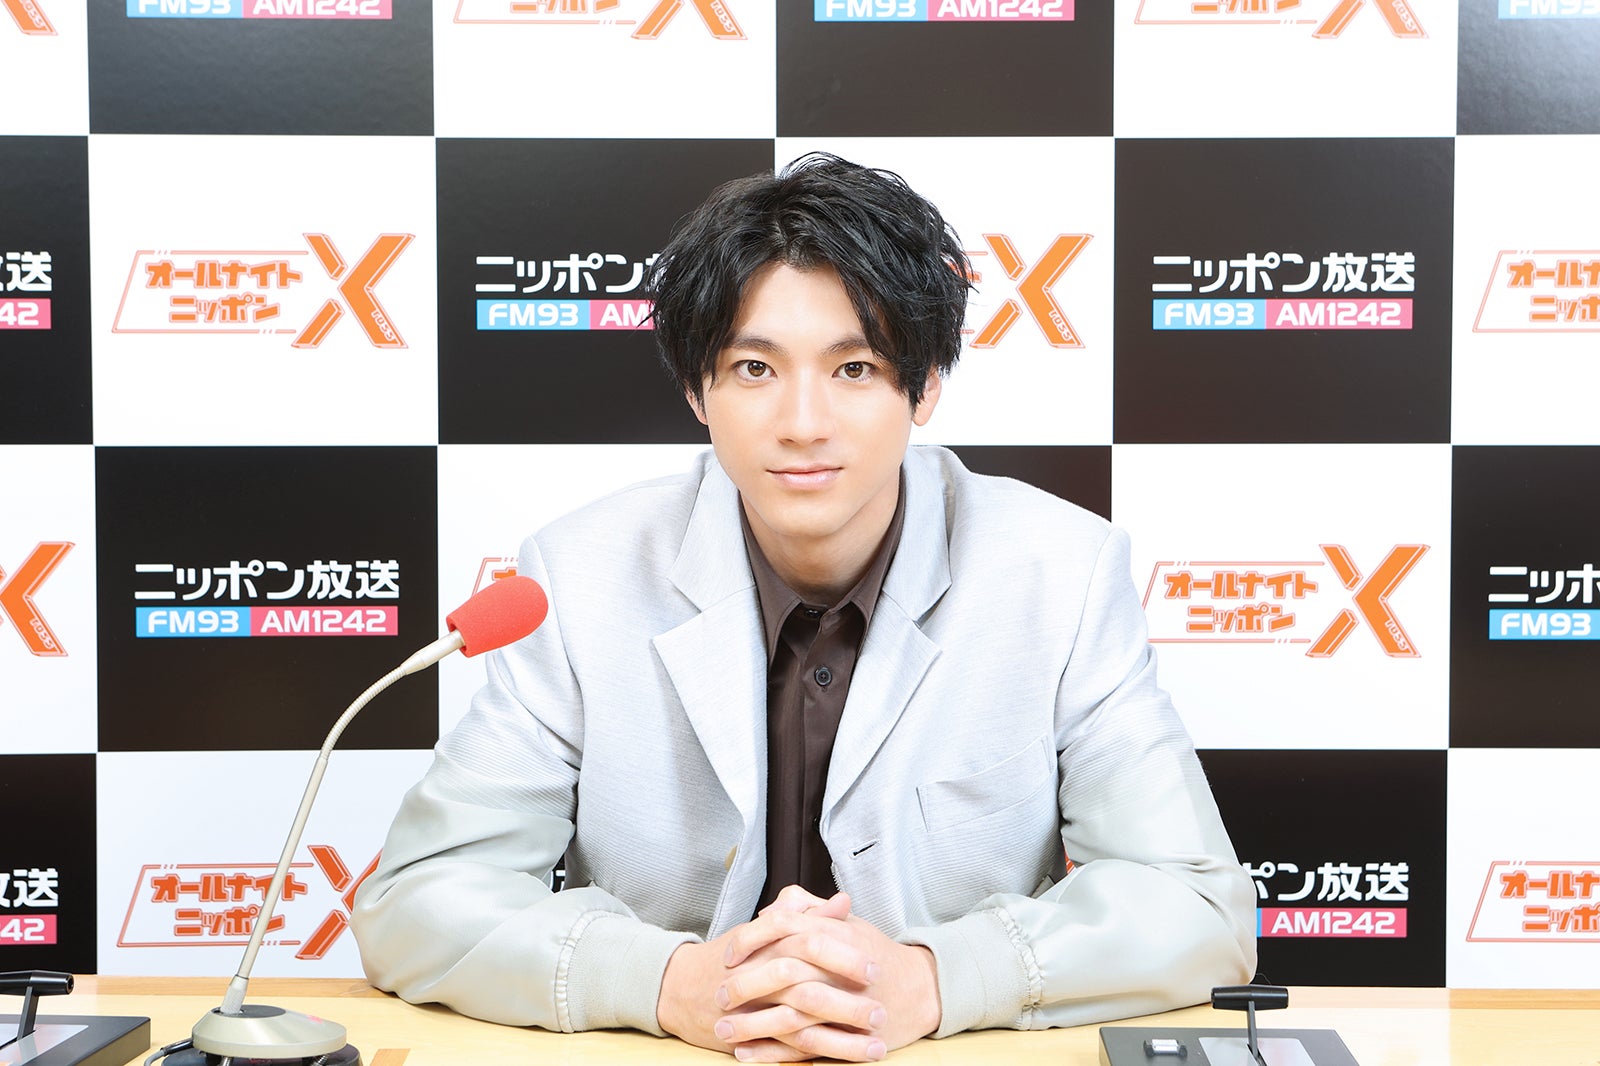 山田裕貴「ANNX」初のイベント決定 ゲストも登場「ドッキリかと思っていた」